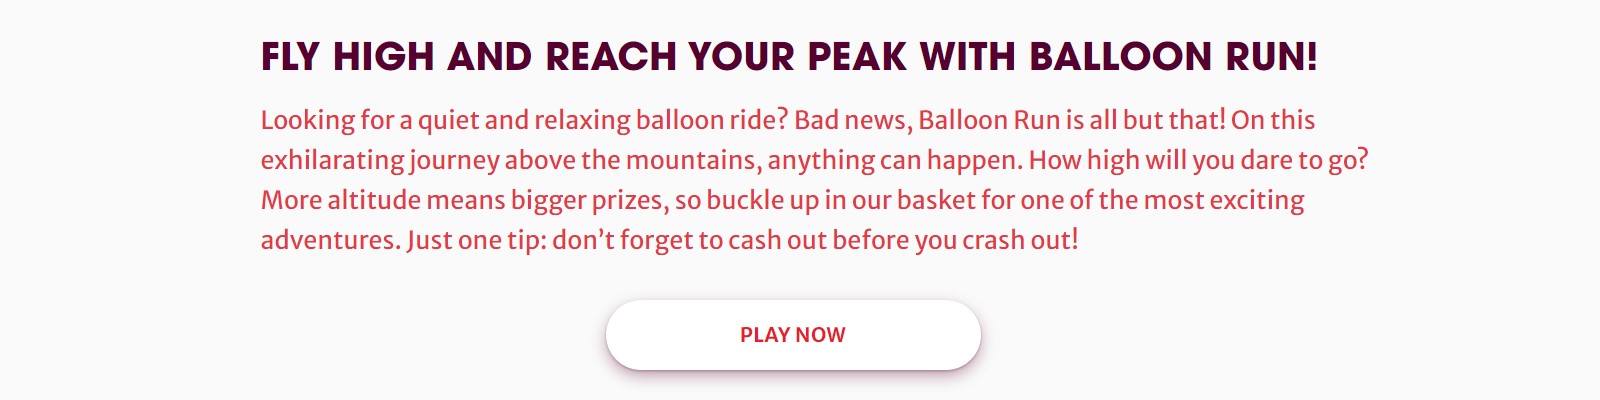 Pelaa Ballon Run nyt!